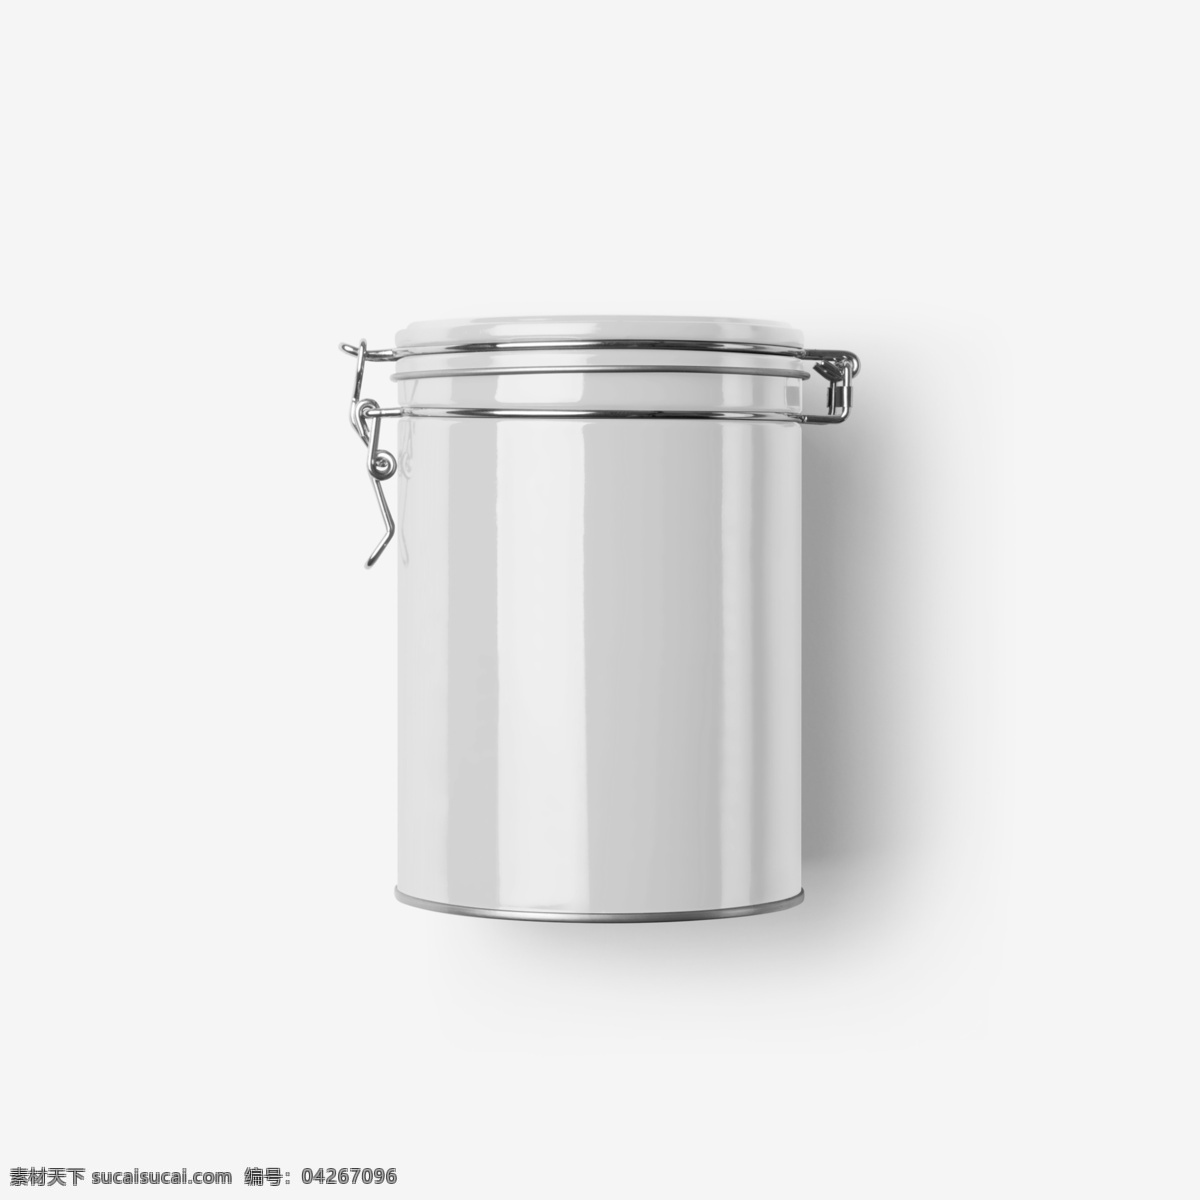 平面 vi 提案 样机 智能对象 金属质感 茶叶罐 品质 茶叶盒子 铁桶 防潮 掀盖 贴图模板